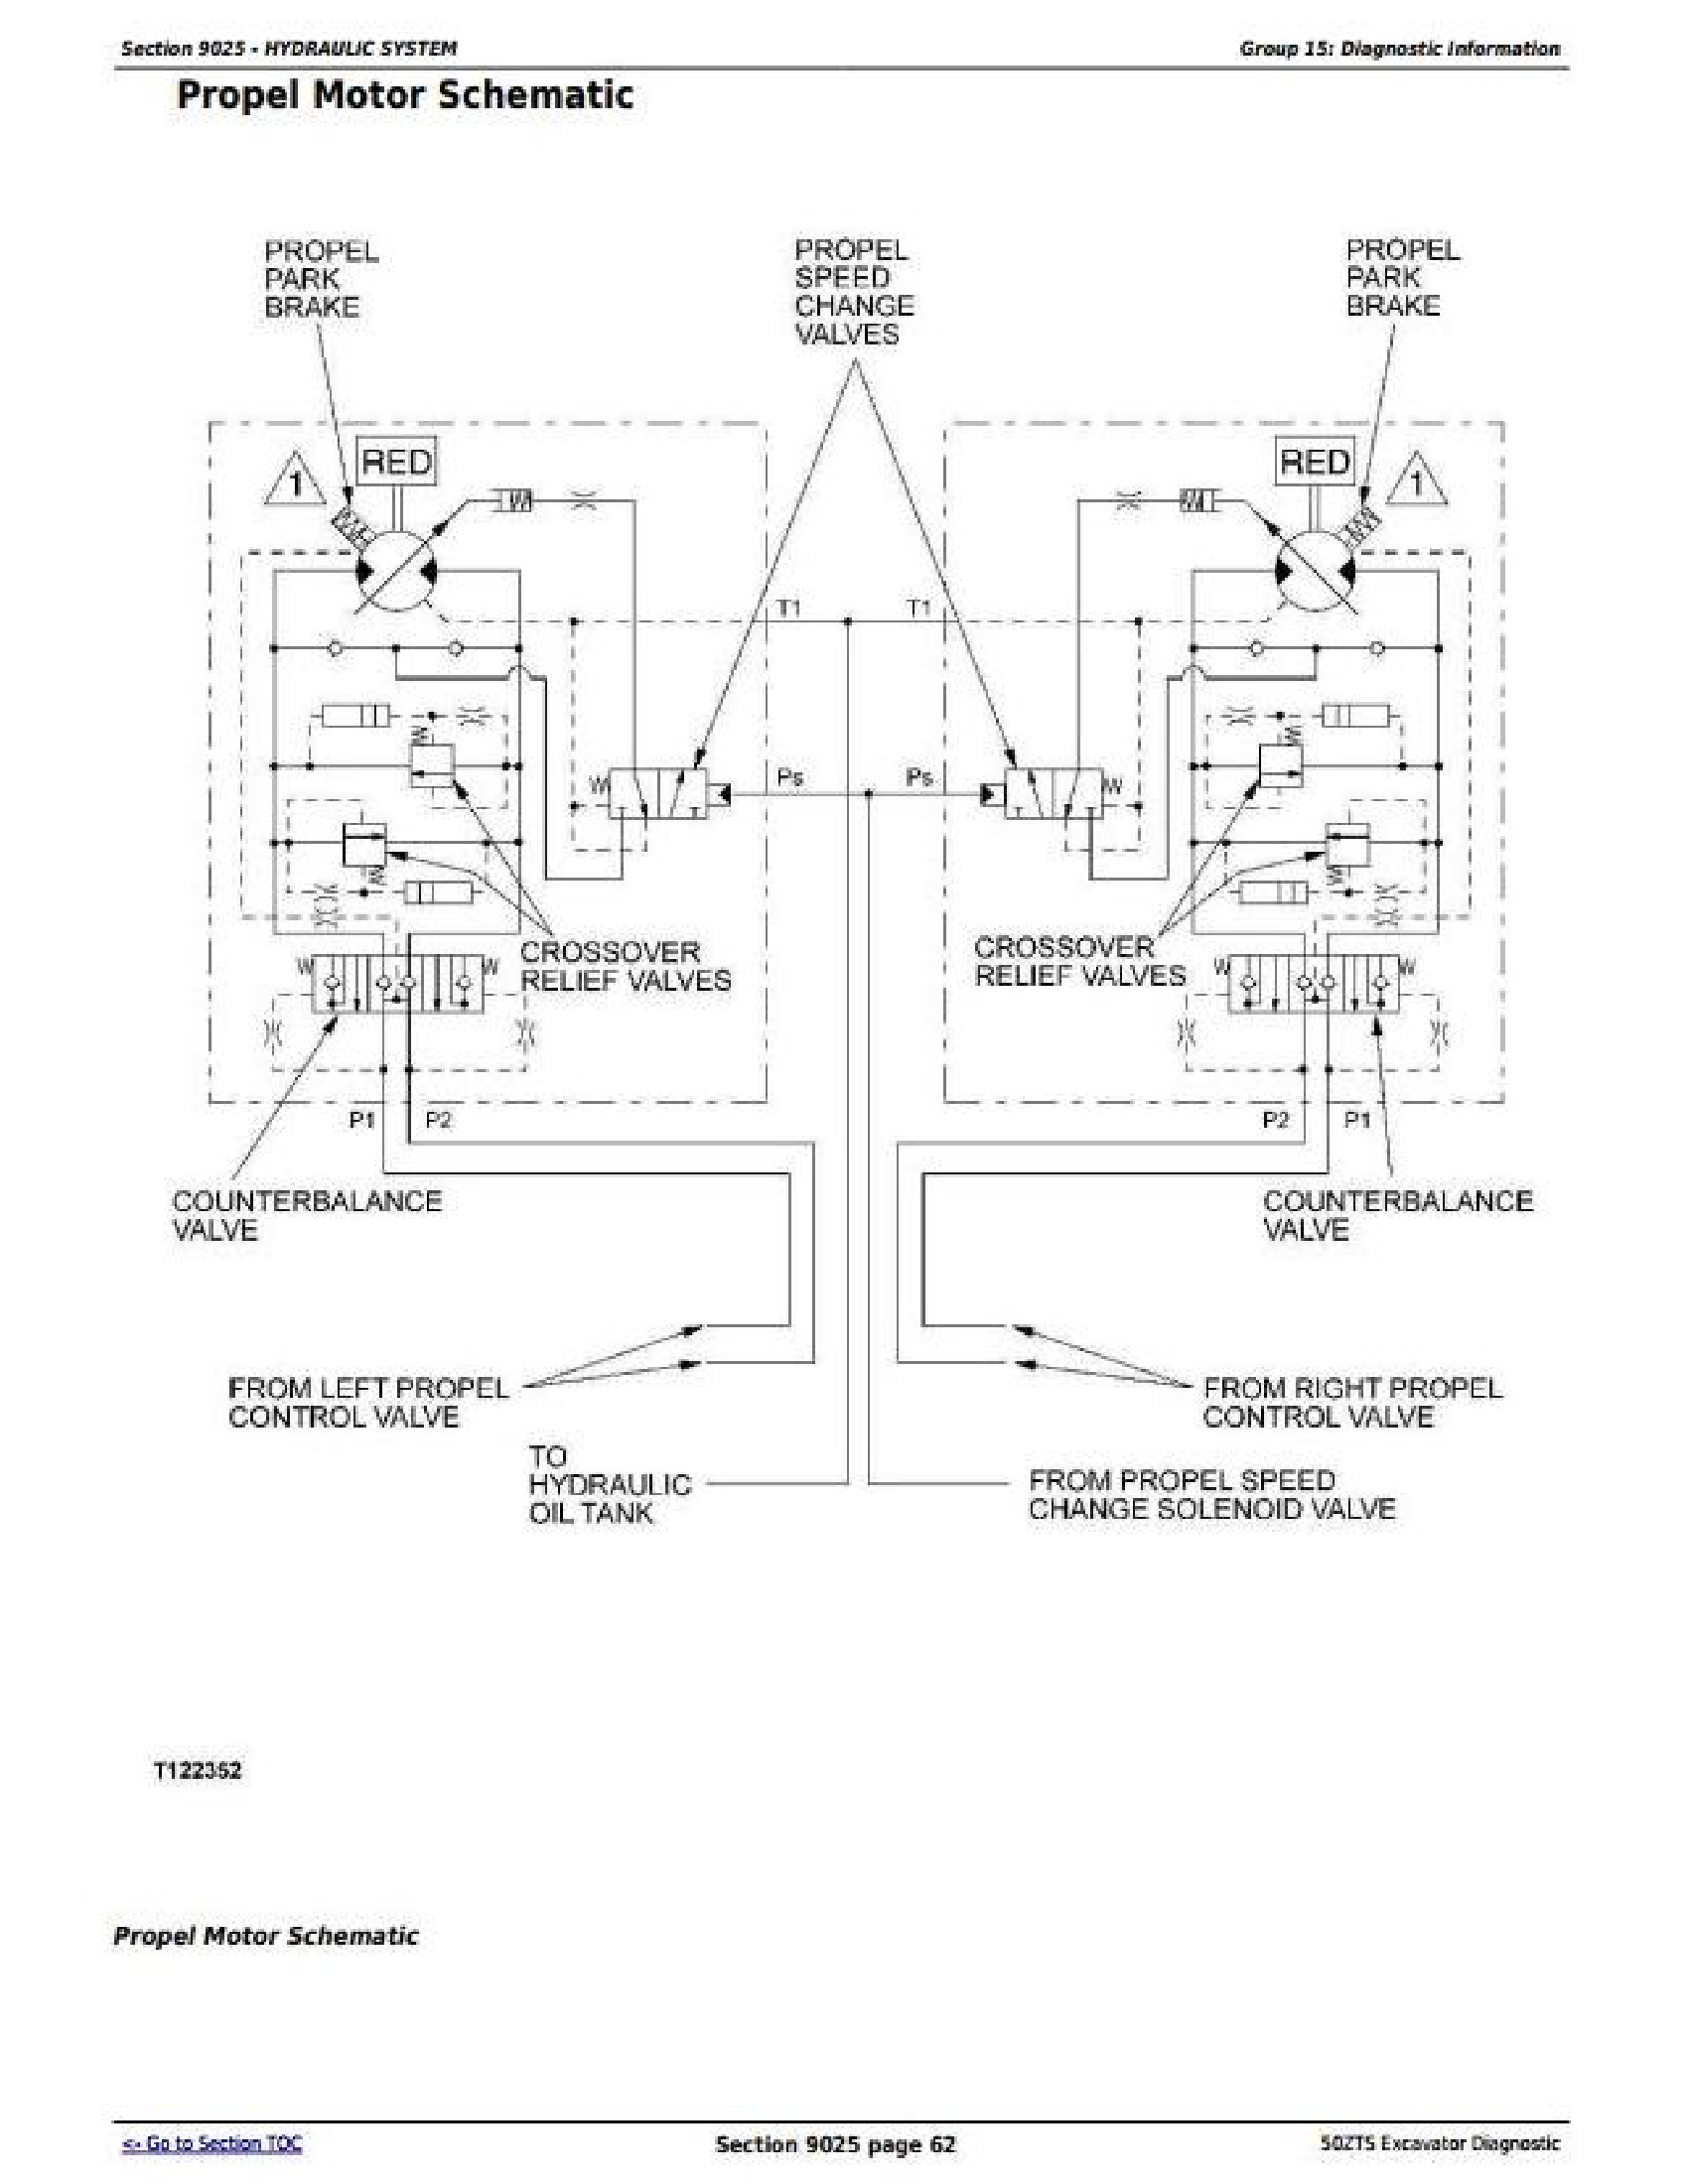 John Deere 17G manual pdf